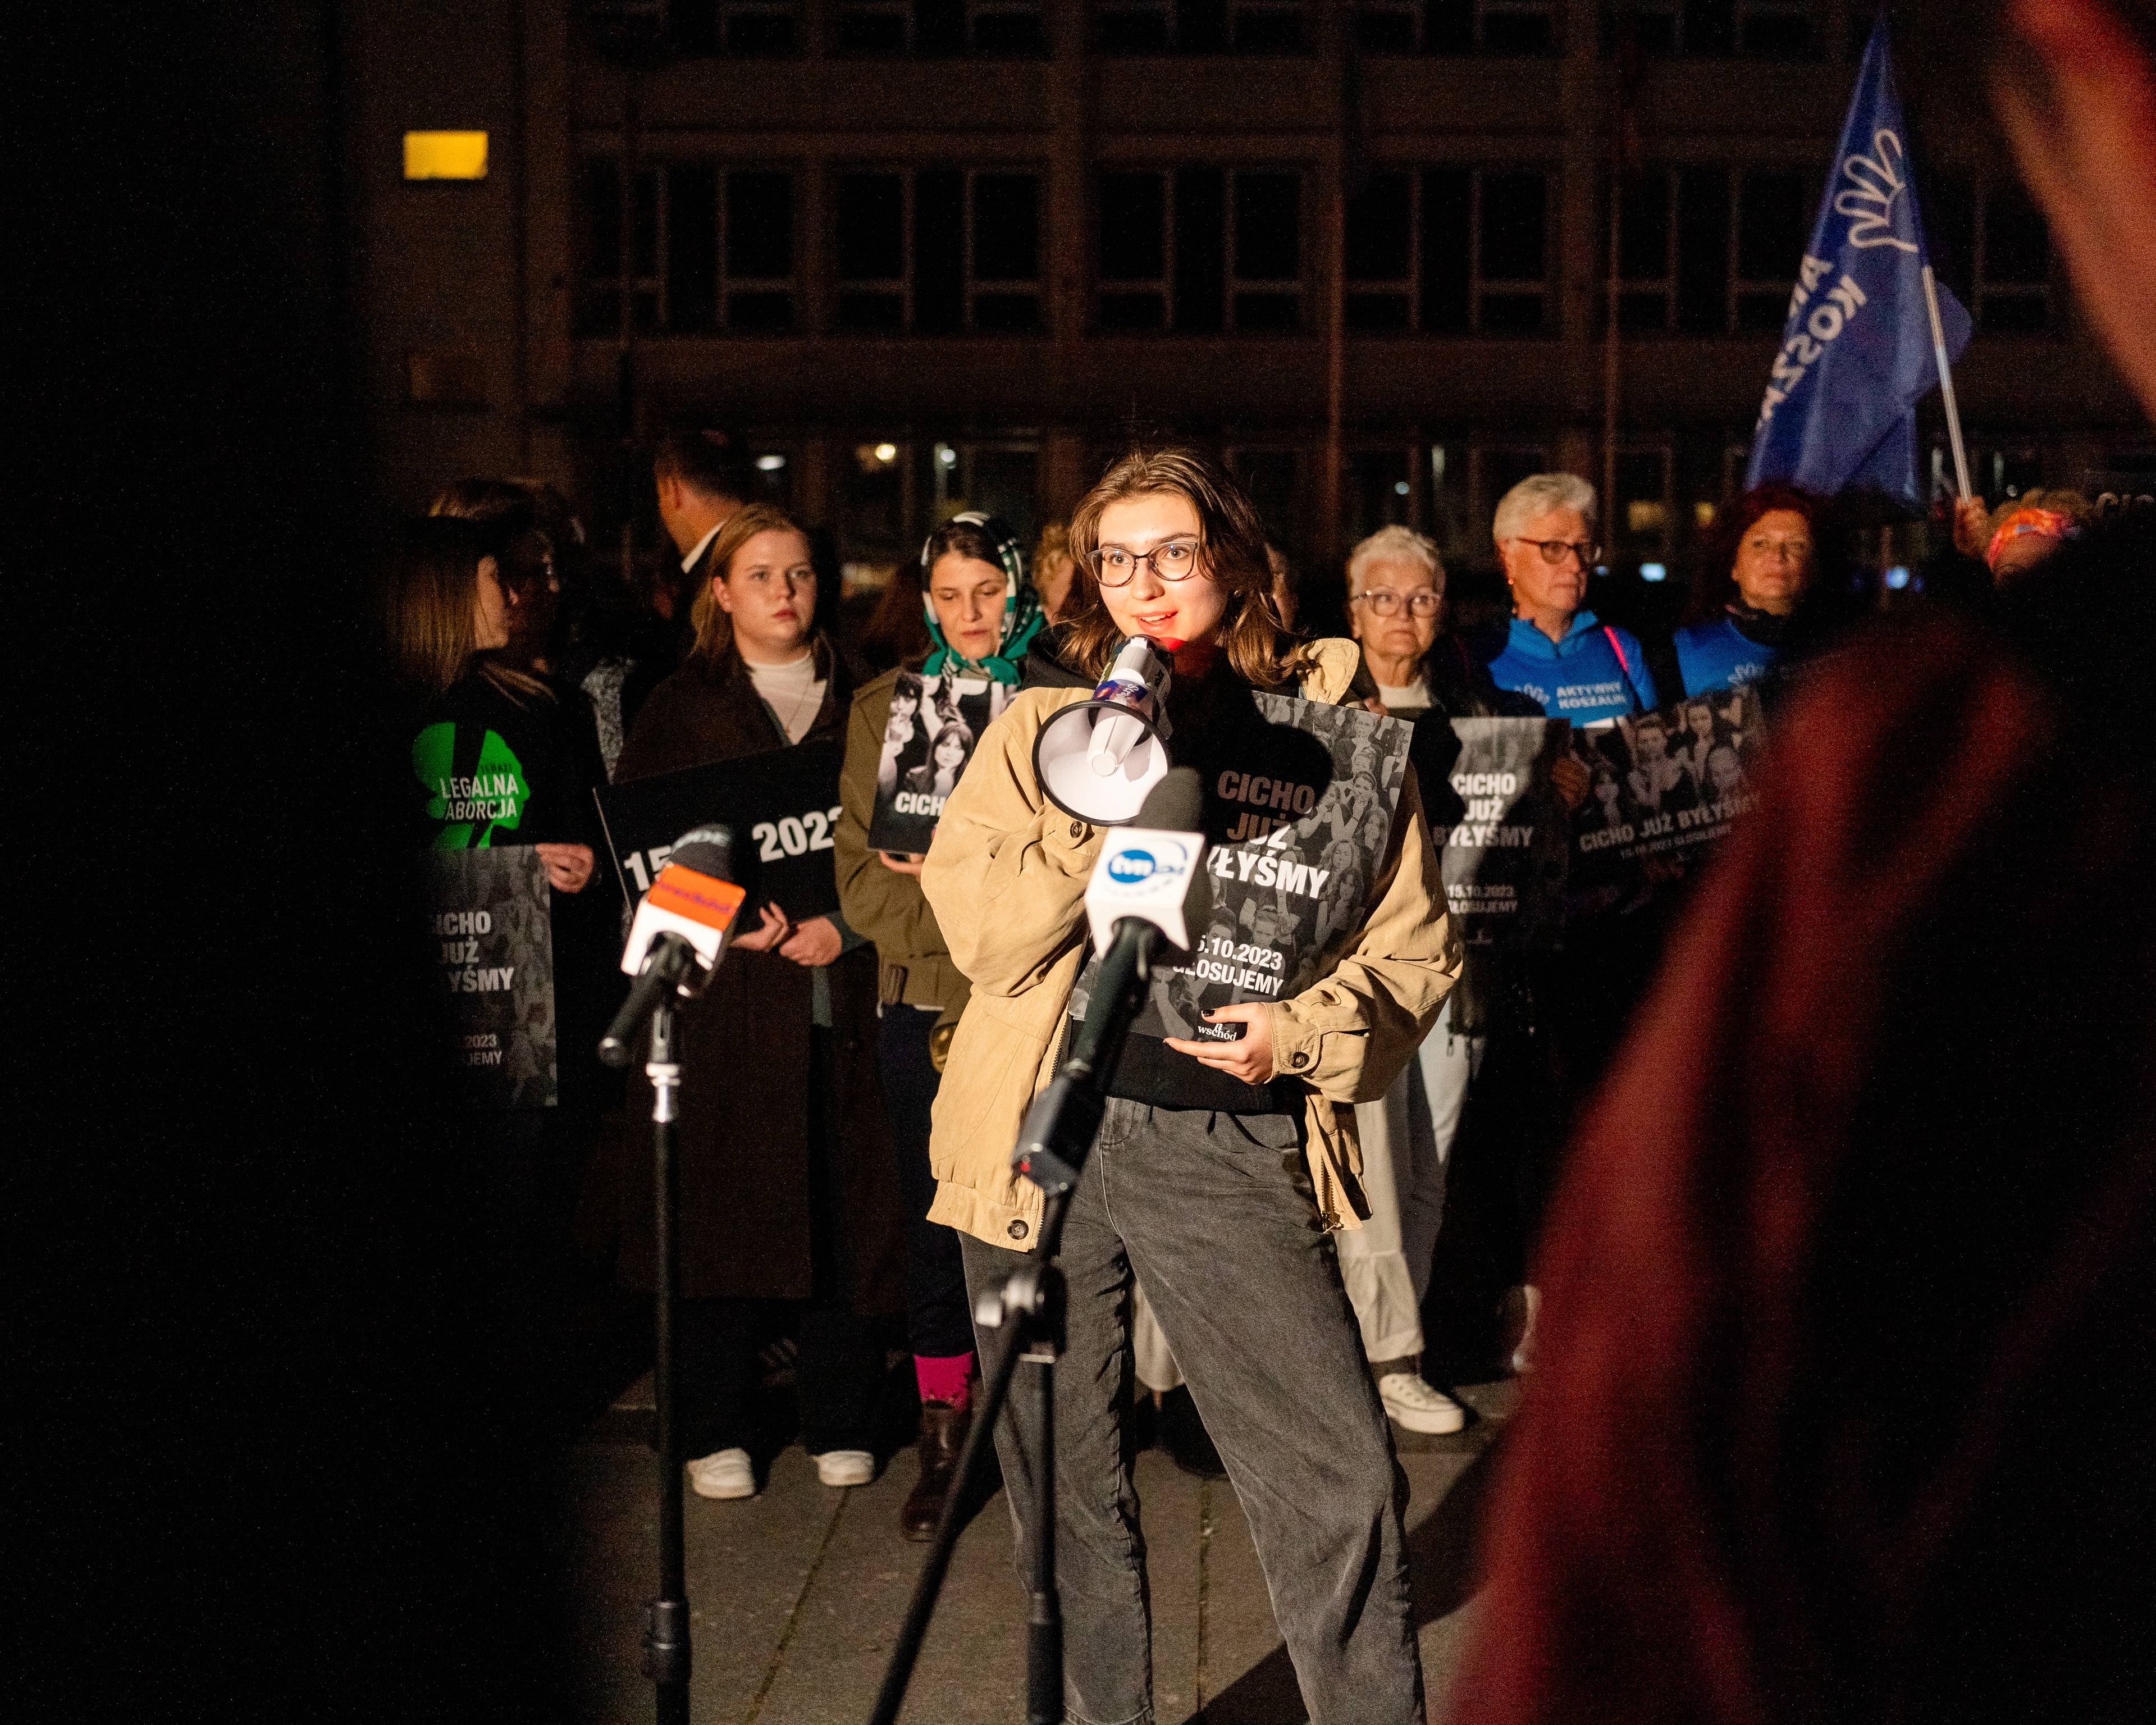 manifestacja uliczna, przemawia dziewczyna z megafonem, trzyma plakat z napisem "Cicho już byłyśmy". Za nią kobiety z podobnymi plakatami